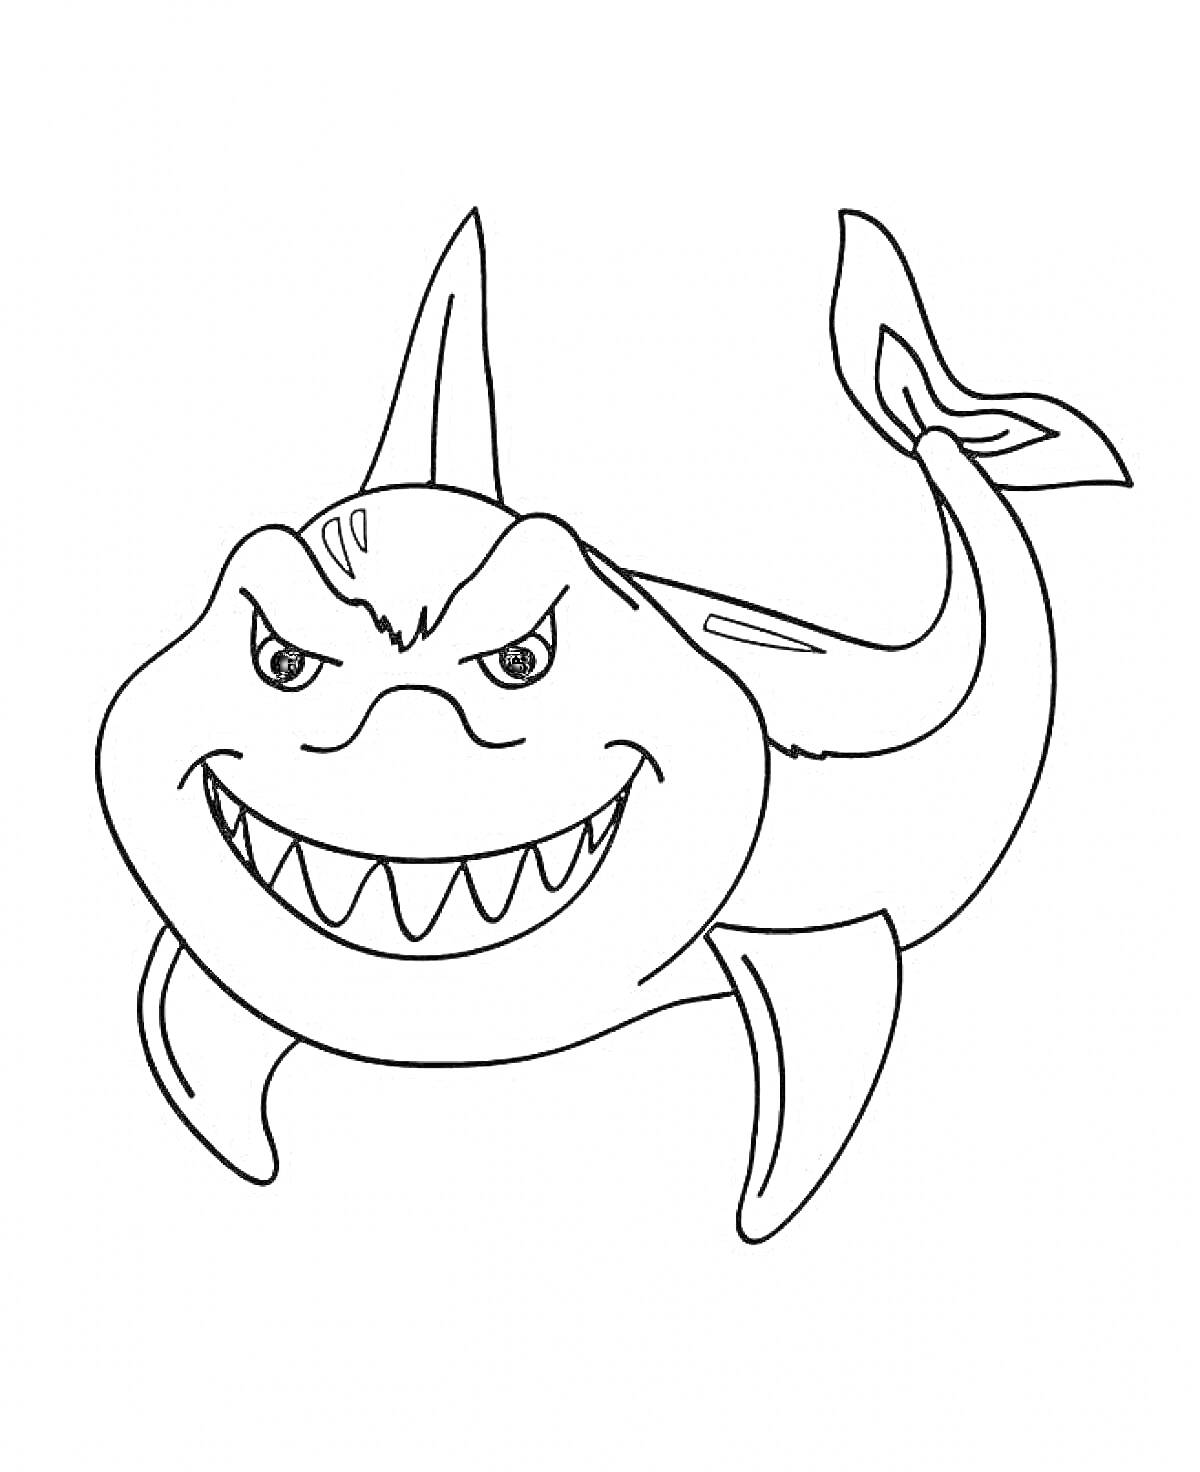 агрессивная акула с острыми зубами и плавниками